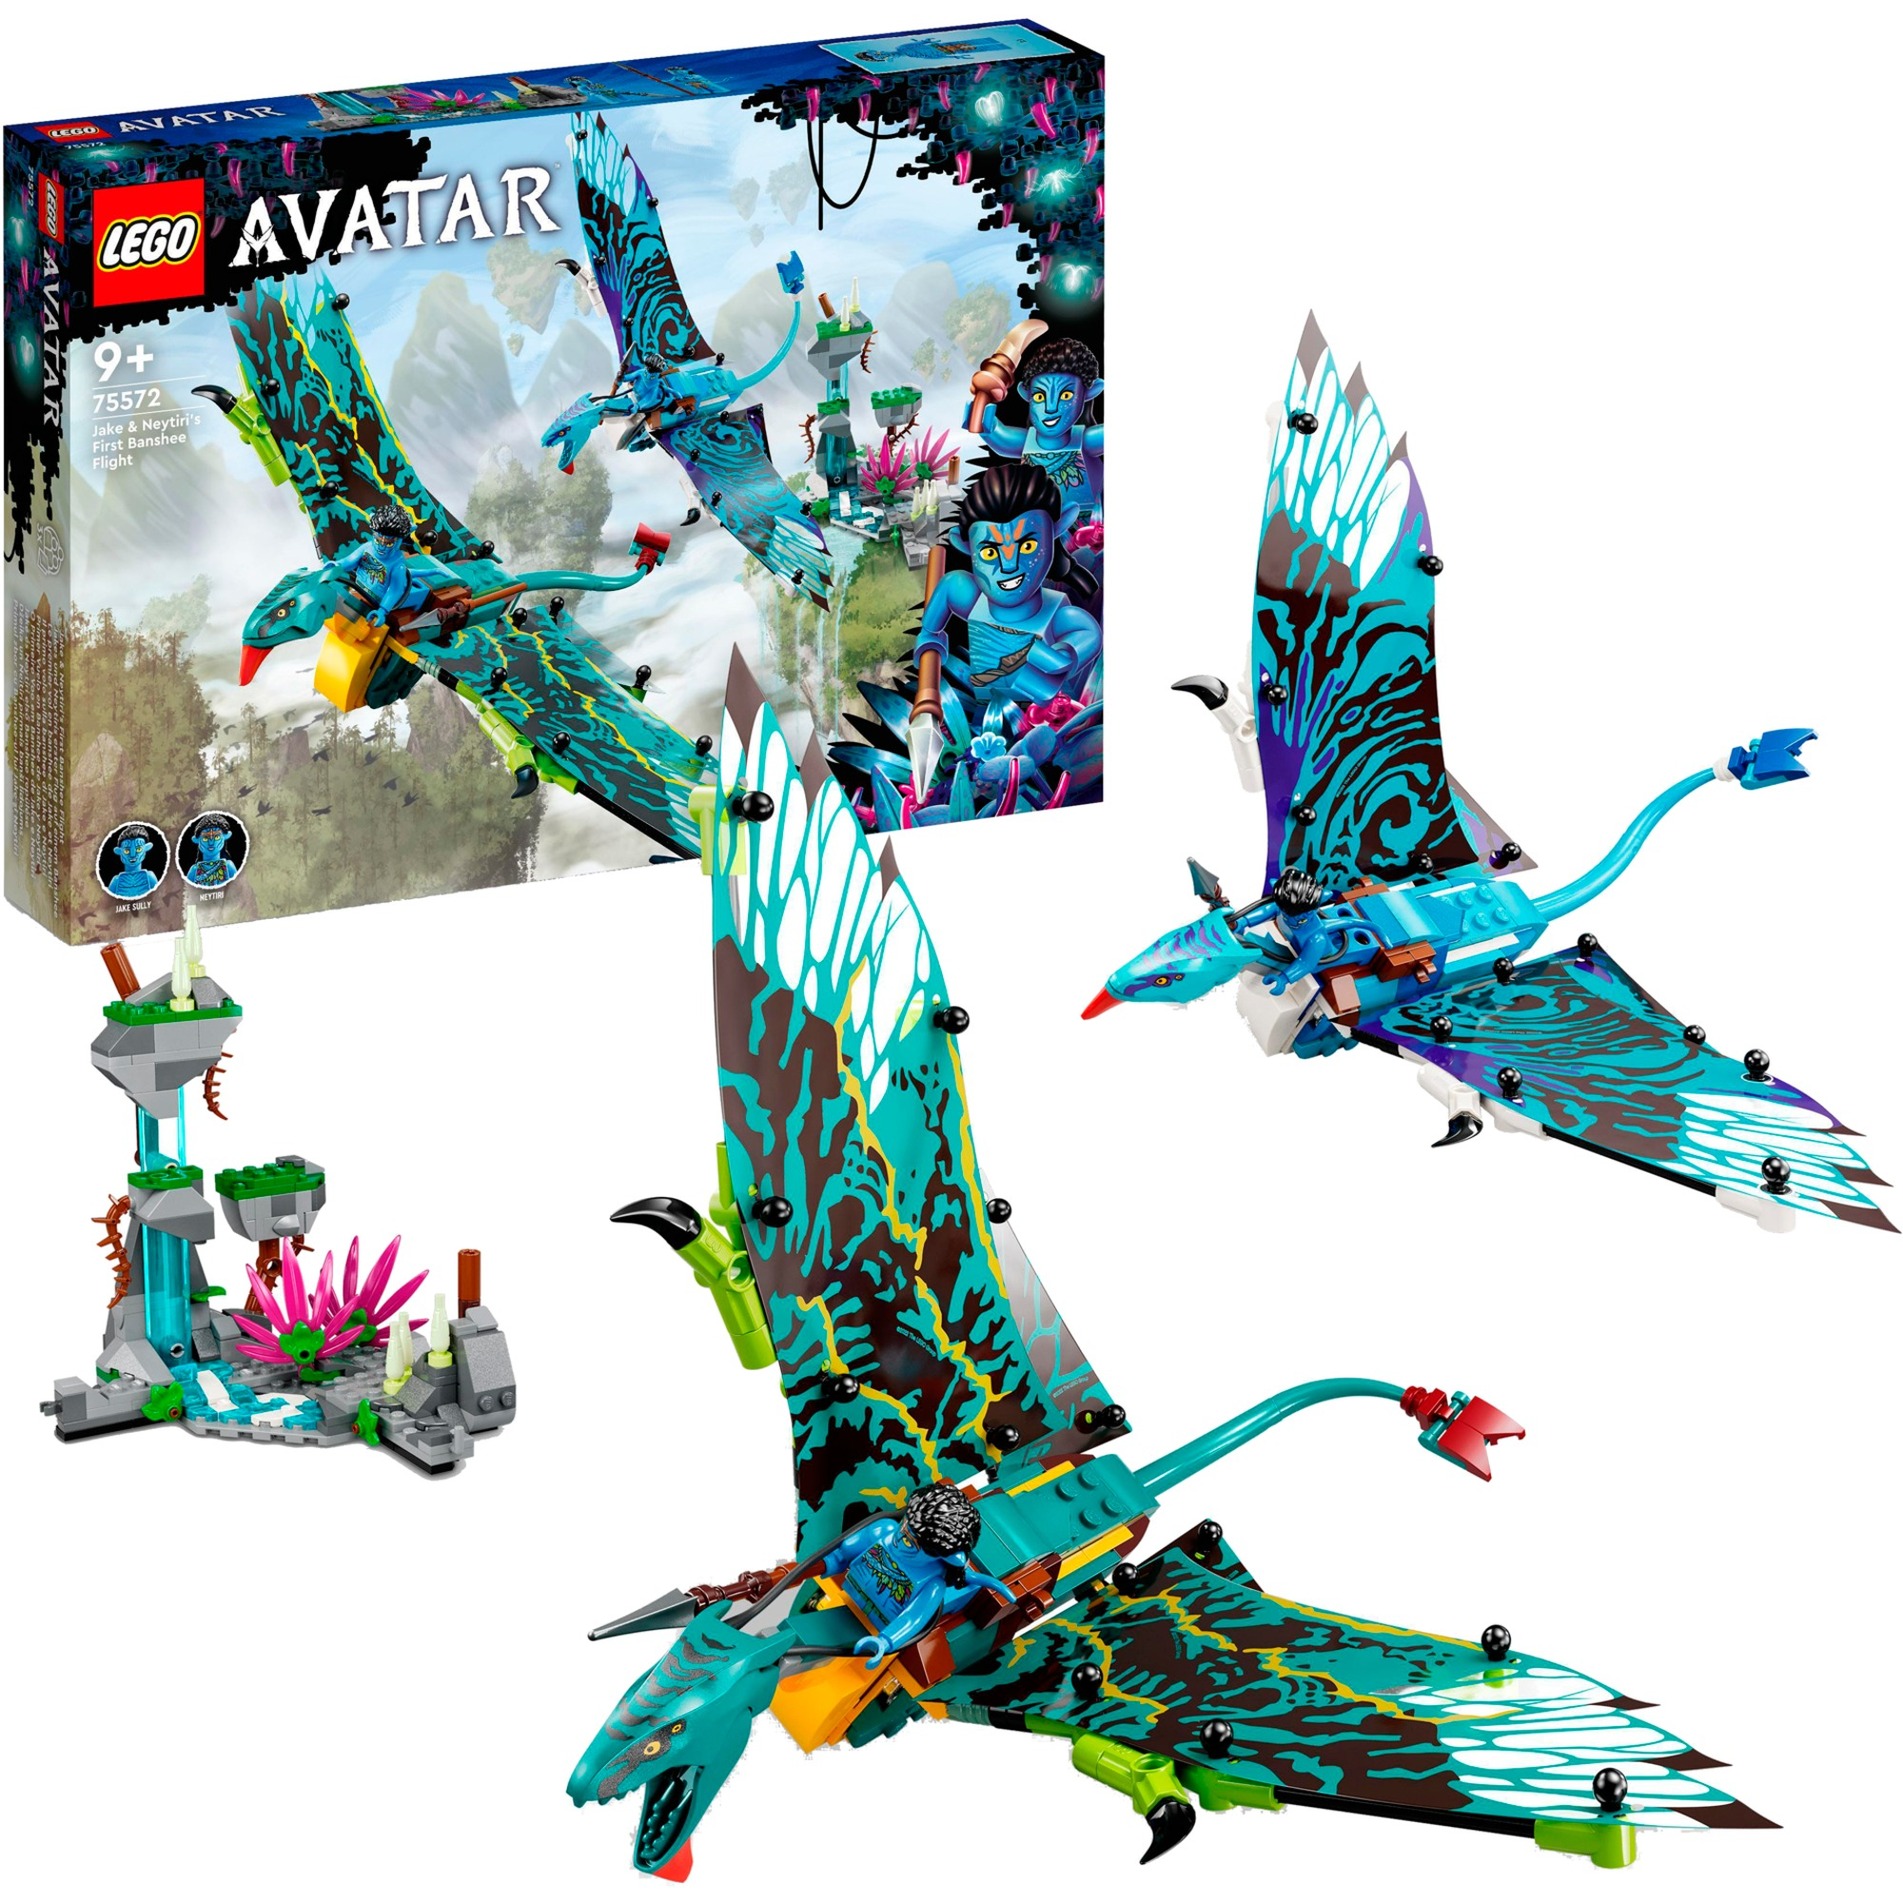 Spielzeug: Lego 75572 Avatar Jake und Neytiris erster Flug auf einem Banshee